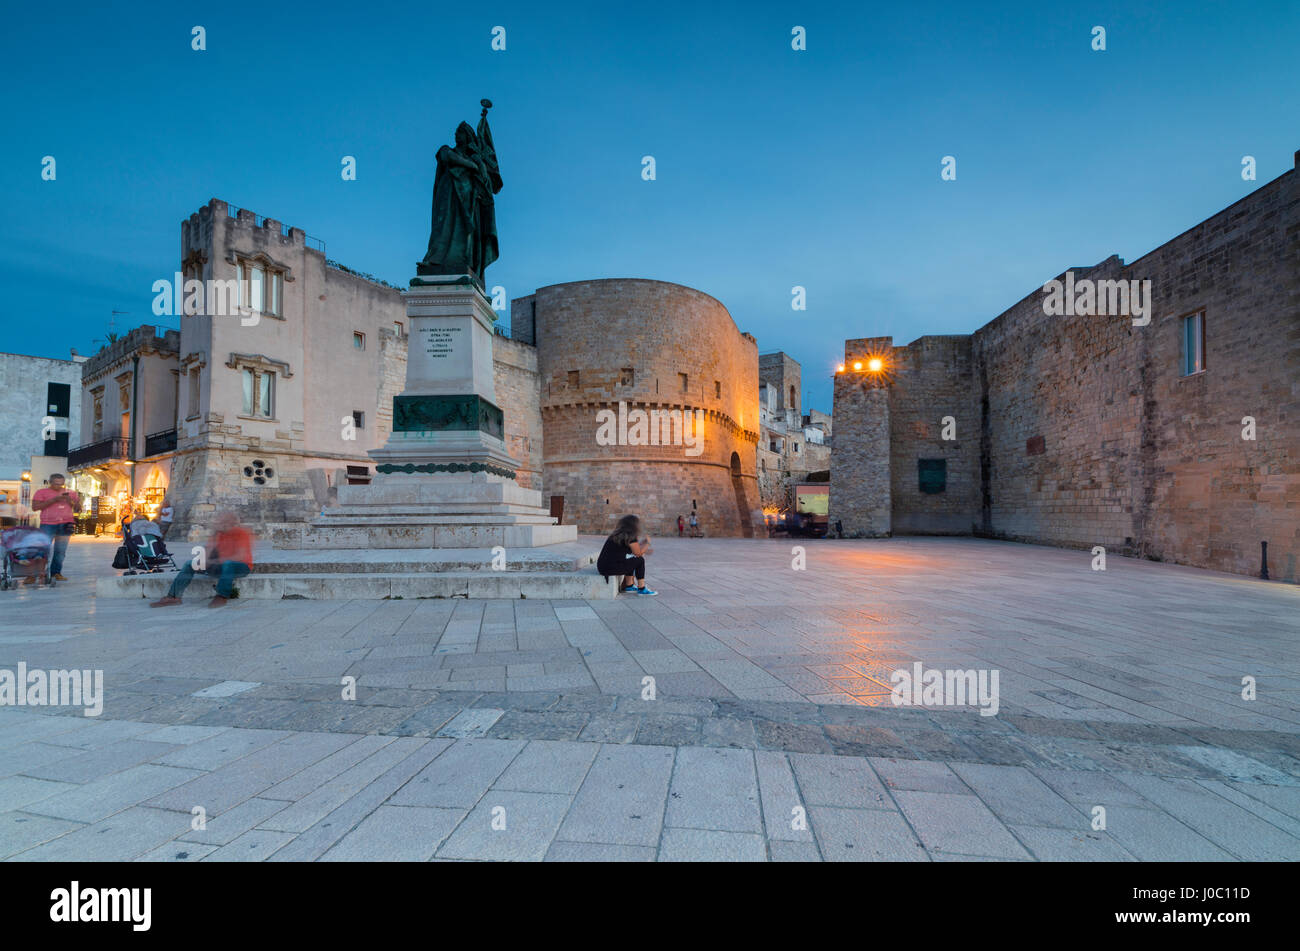 Le luci del tramonto sulla fortezza medievale e le piazze del centro storico di Otranto, provincia di Lecce, Puglia, Italia Foto Stock